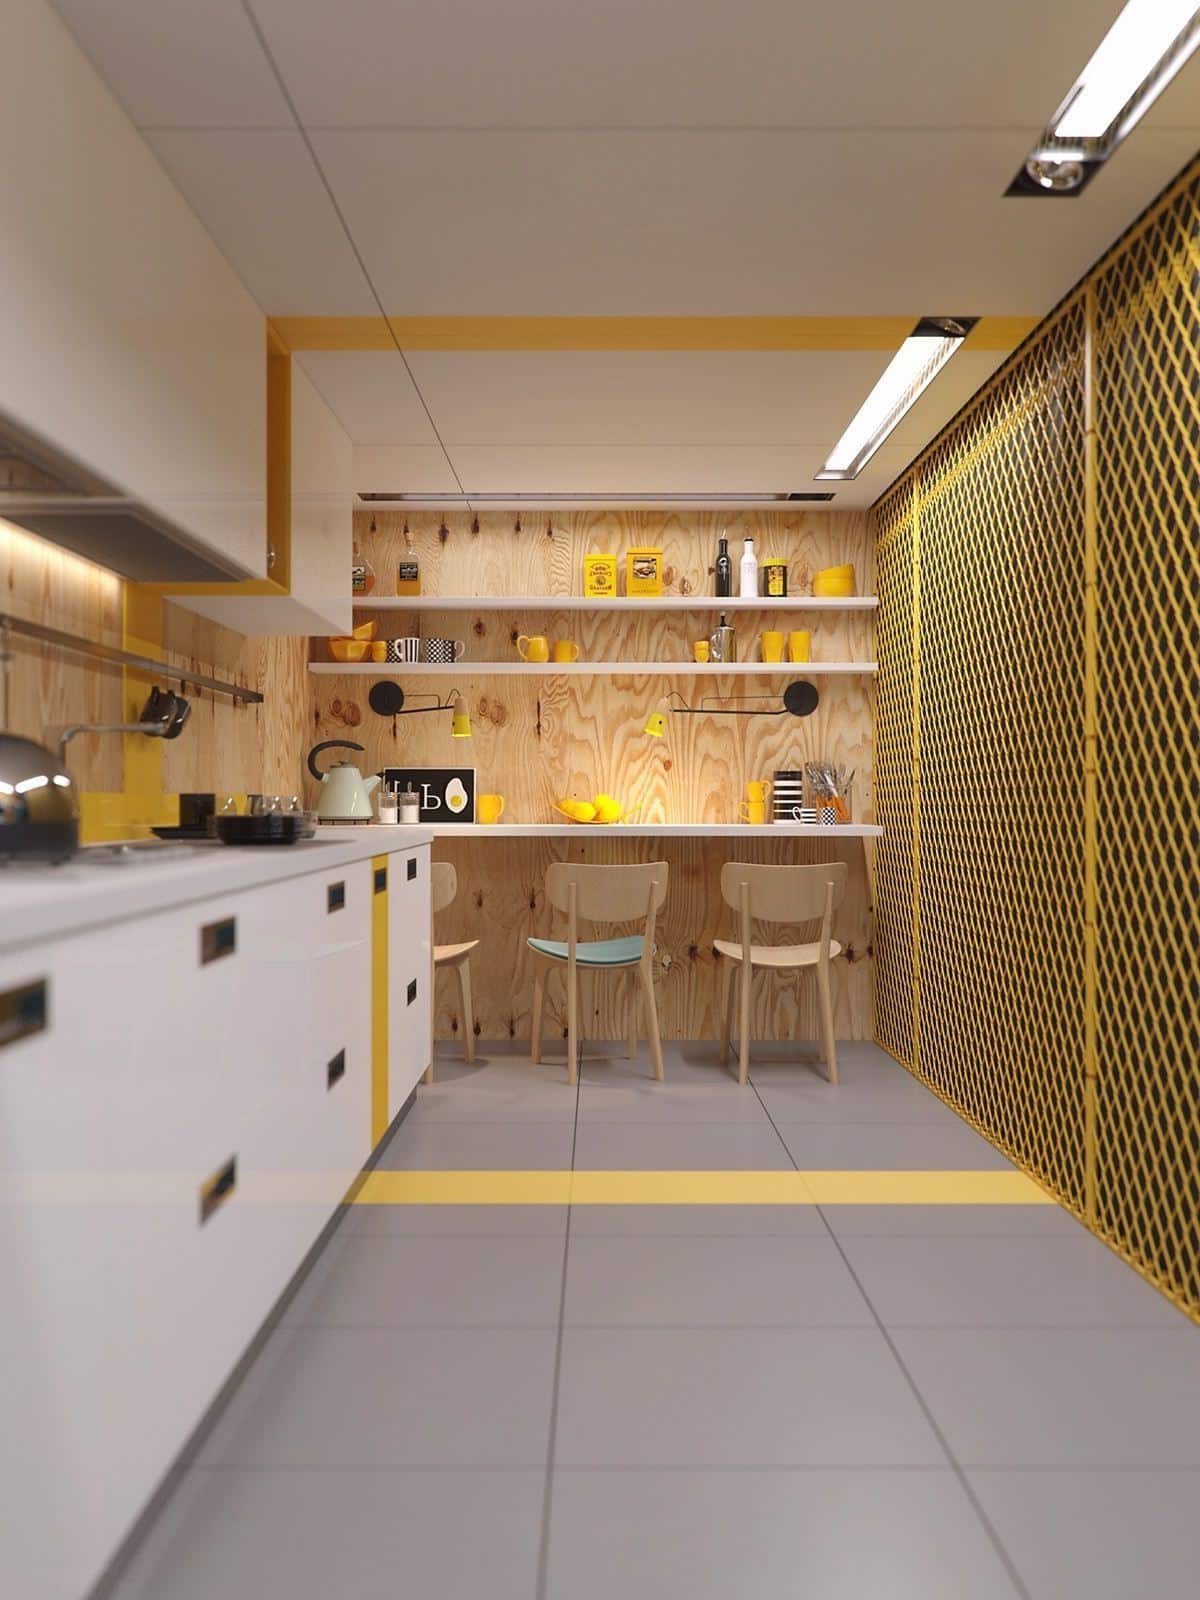 Дизайн интерьера узкой кухни требует особого подхода, так как наличие свободного пространство в таком помещении сильно ограничен